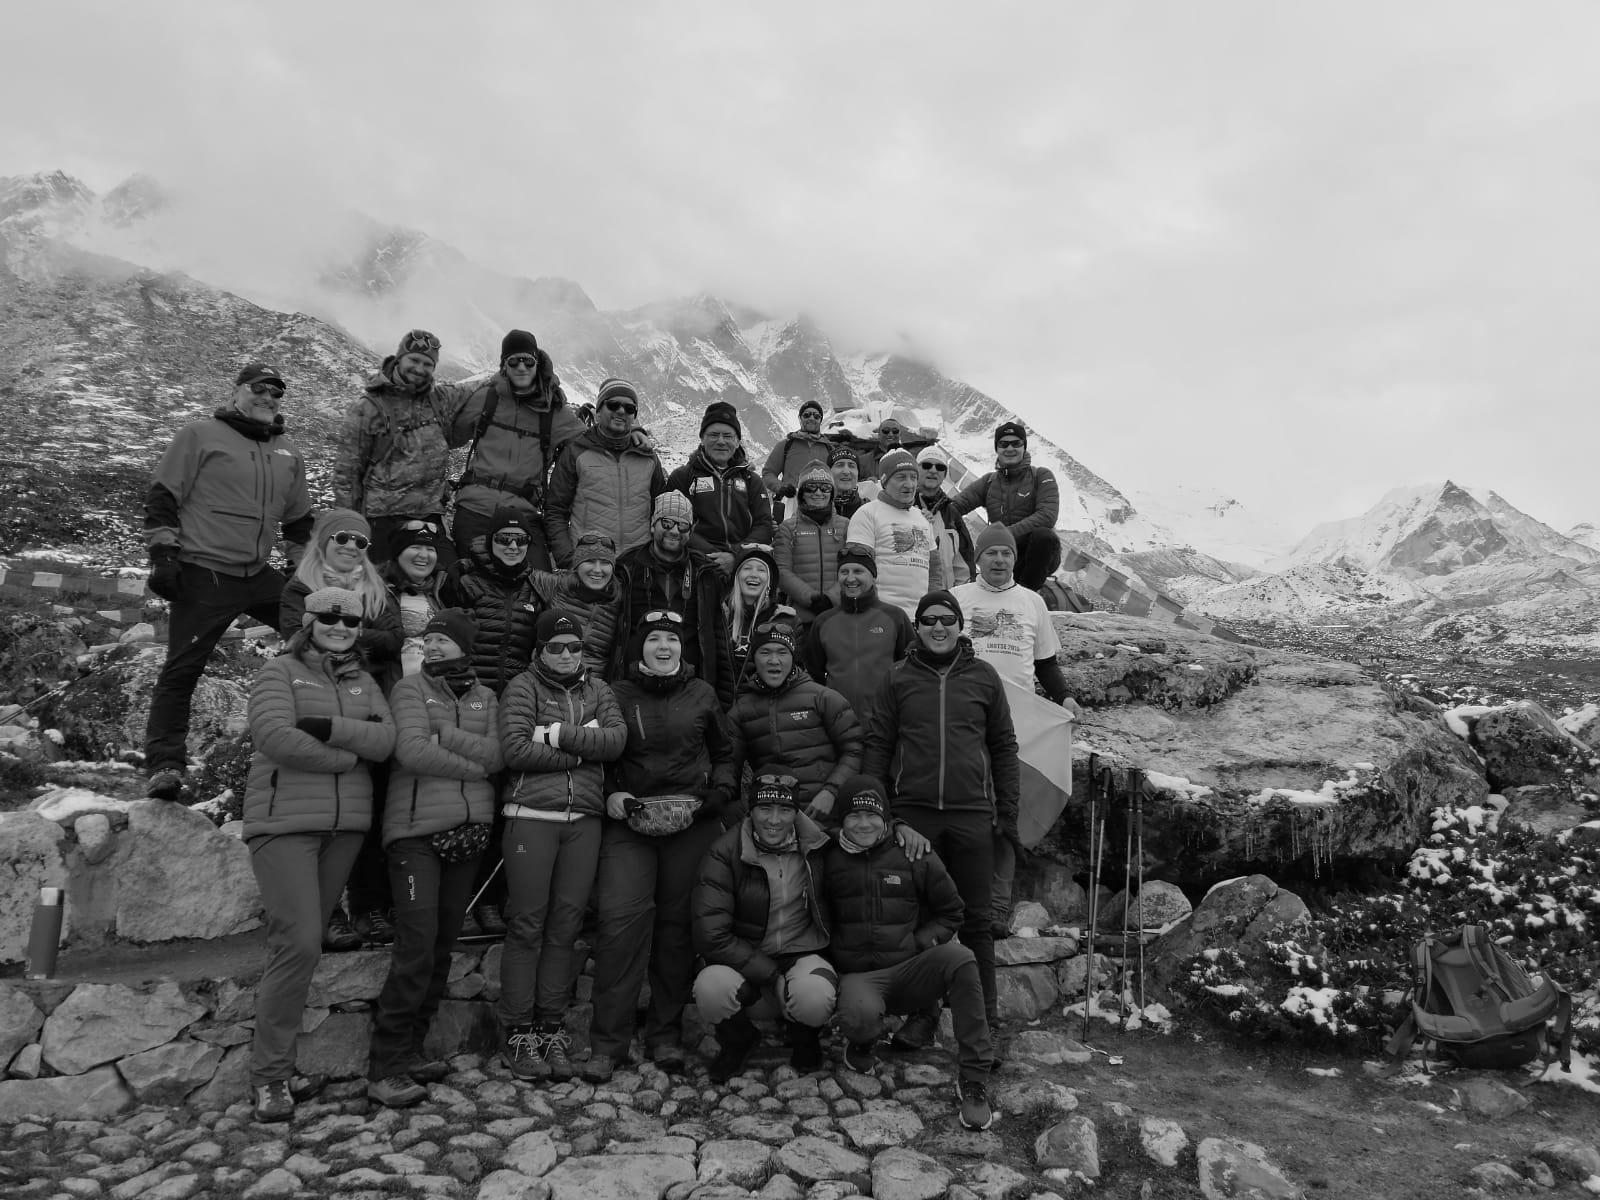 24.10.2019 – spotkanie przy Memoriale Bohaterów Południowej Ściany Lhotse